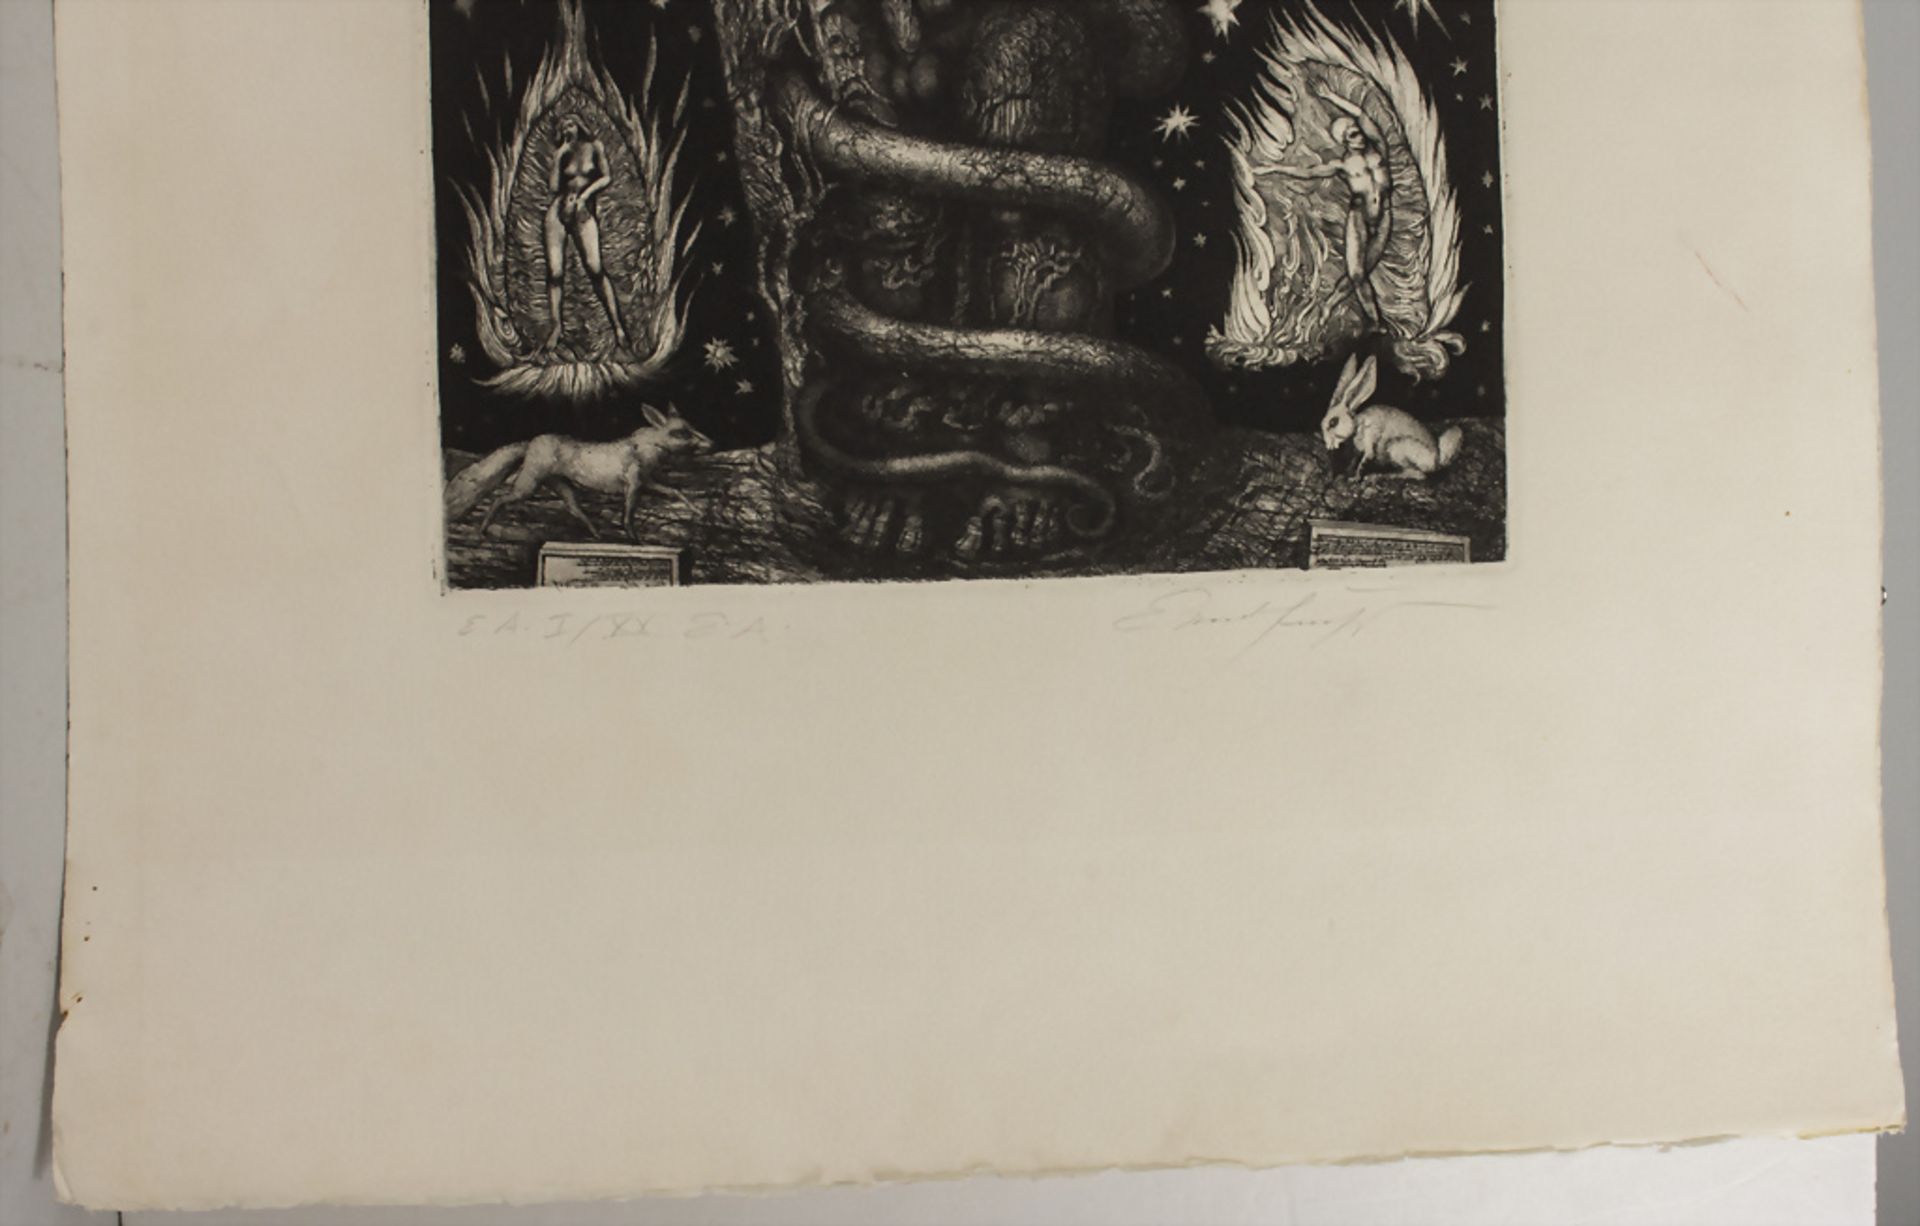 Phantastischer Realismus, Ernst Fuchs (1930-2015), 'Adams Traum' / 'Adam's dream', 1969 - Image 4 of 5